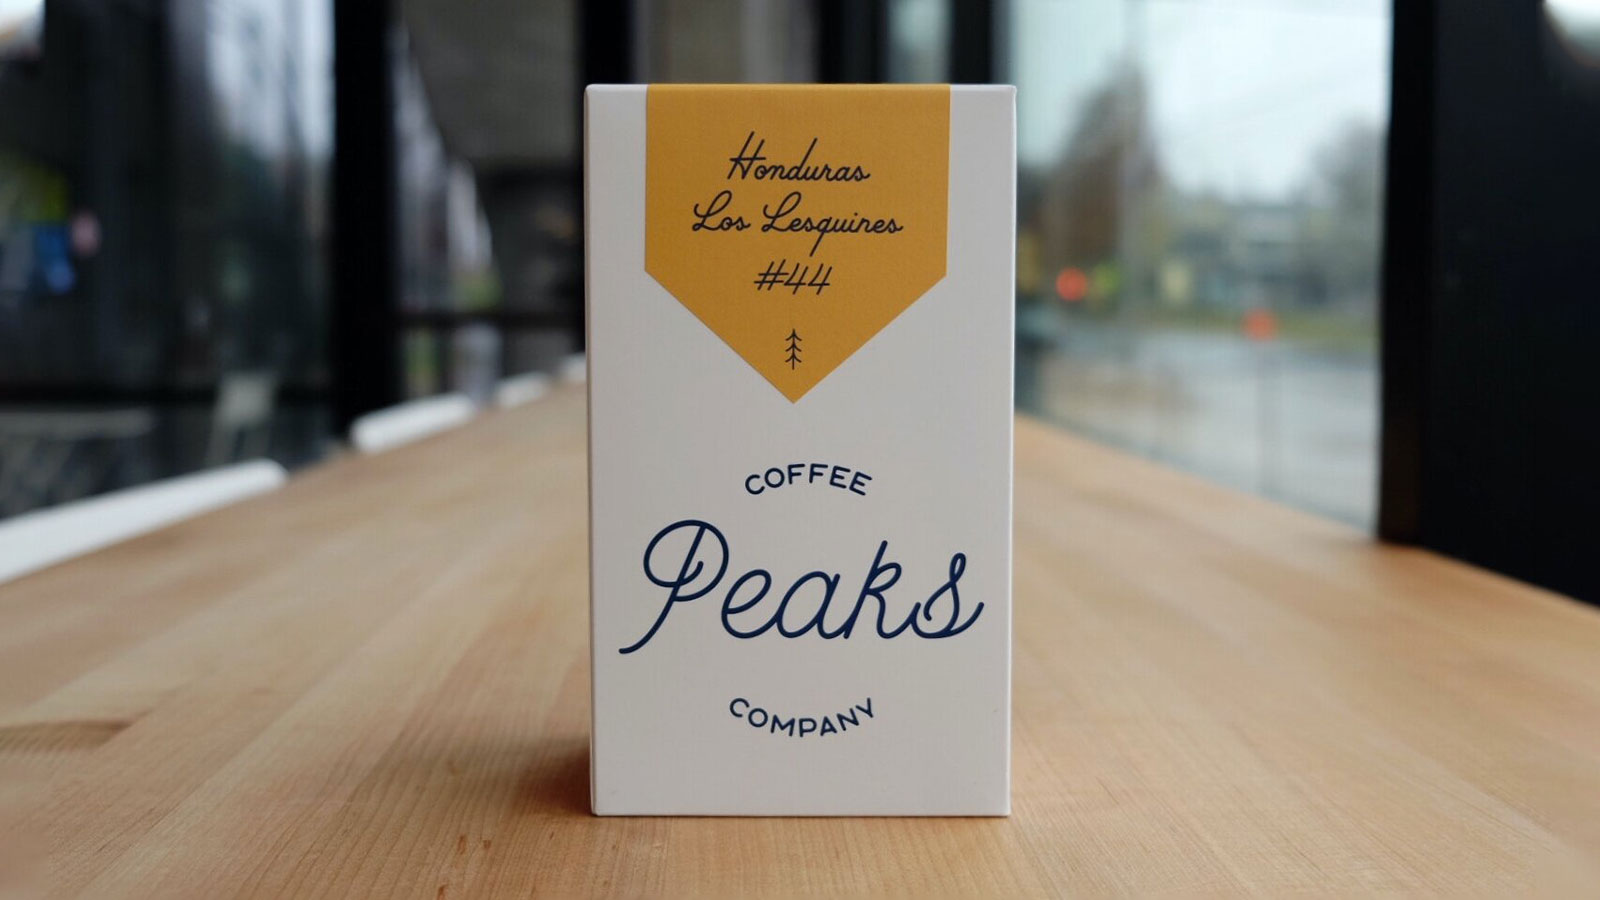 Peaks Coffee Co. Honduras Los Lesquines Coffee